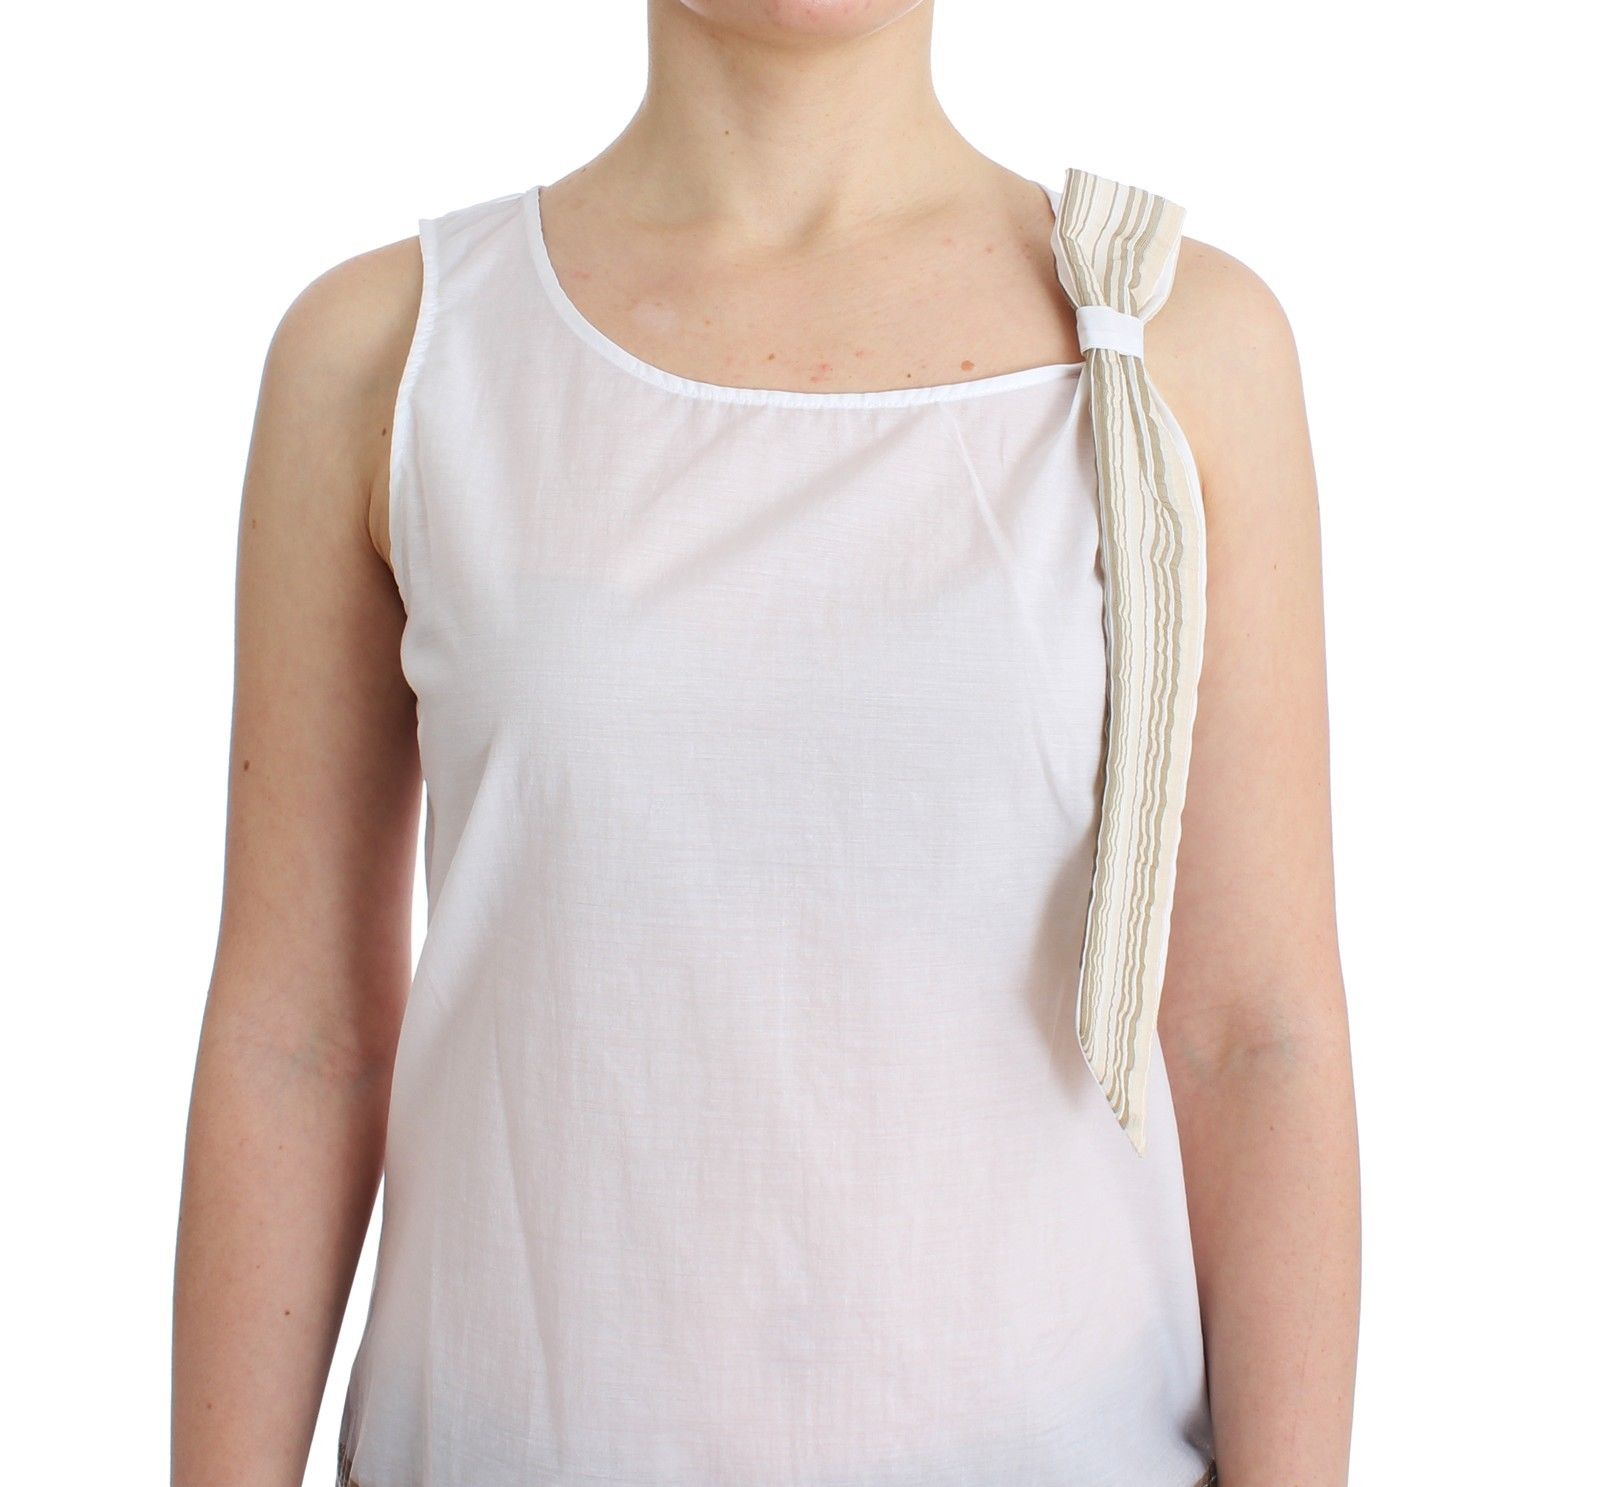 Ermanno Scervino White Top Blouse Tank Shirt Sleeveless • Fashion ...